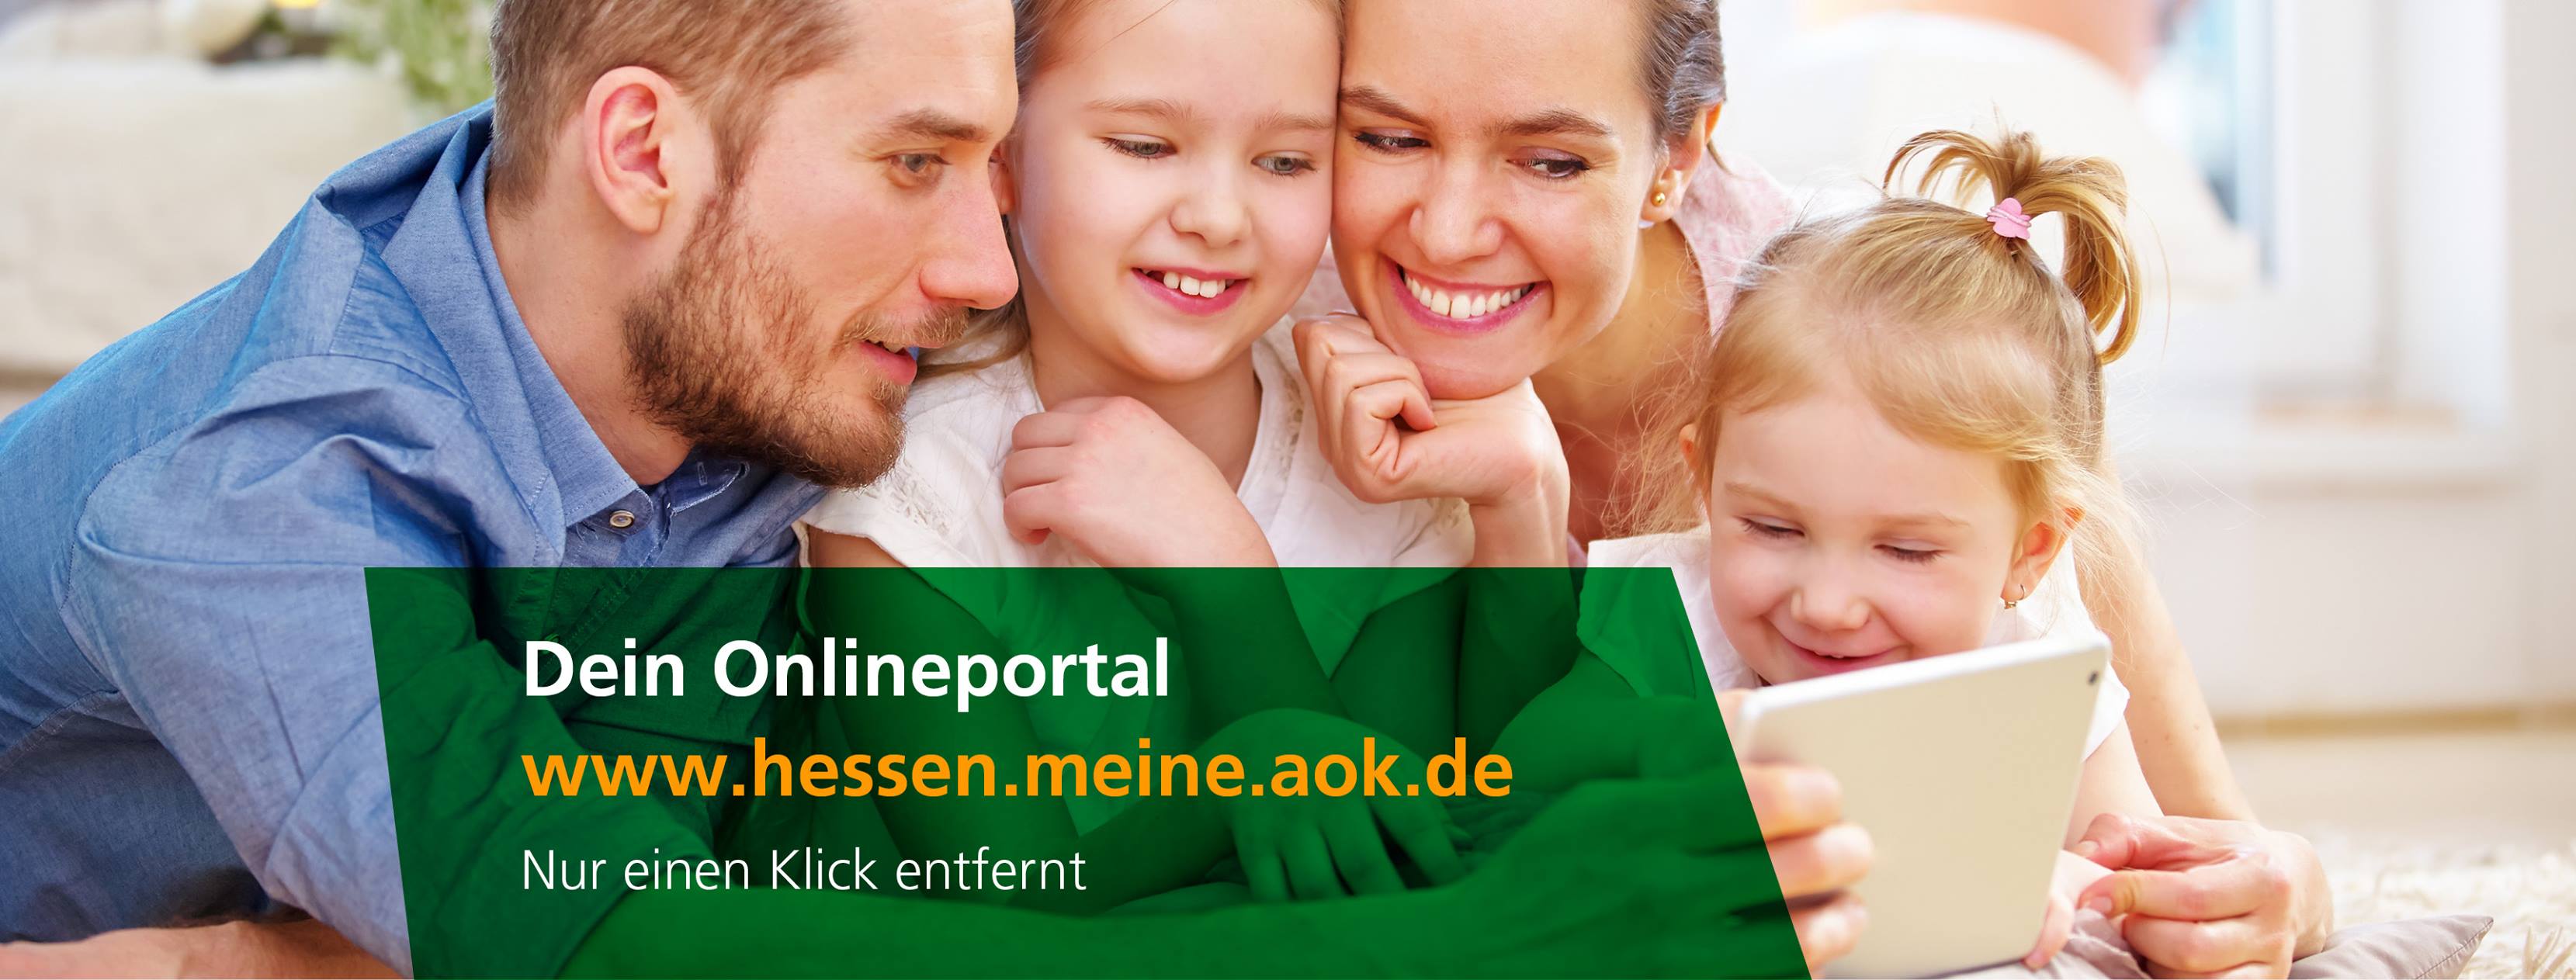 Kundenbild groß 4 AOK - Die Gesundheitskasse in Hessen - Firmenservice